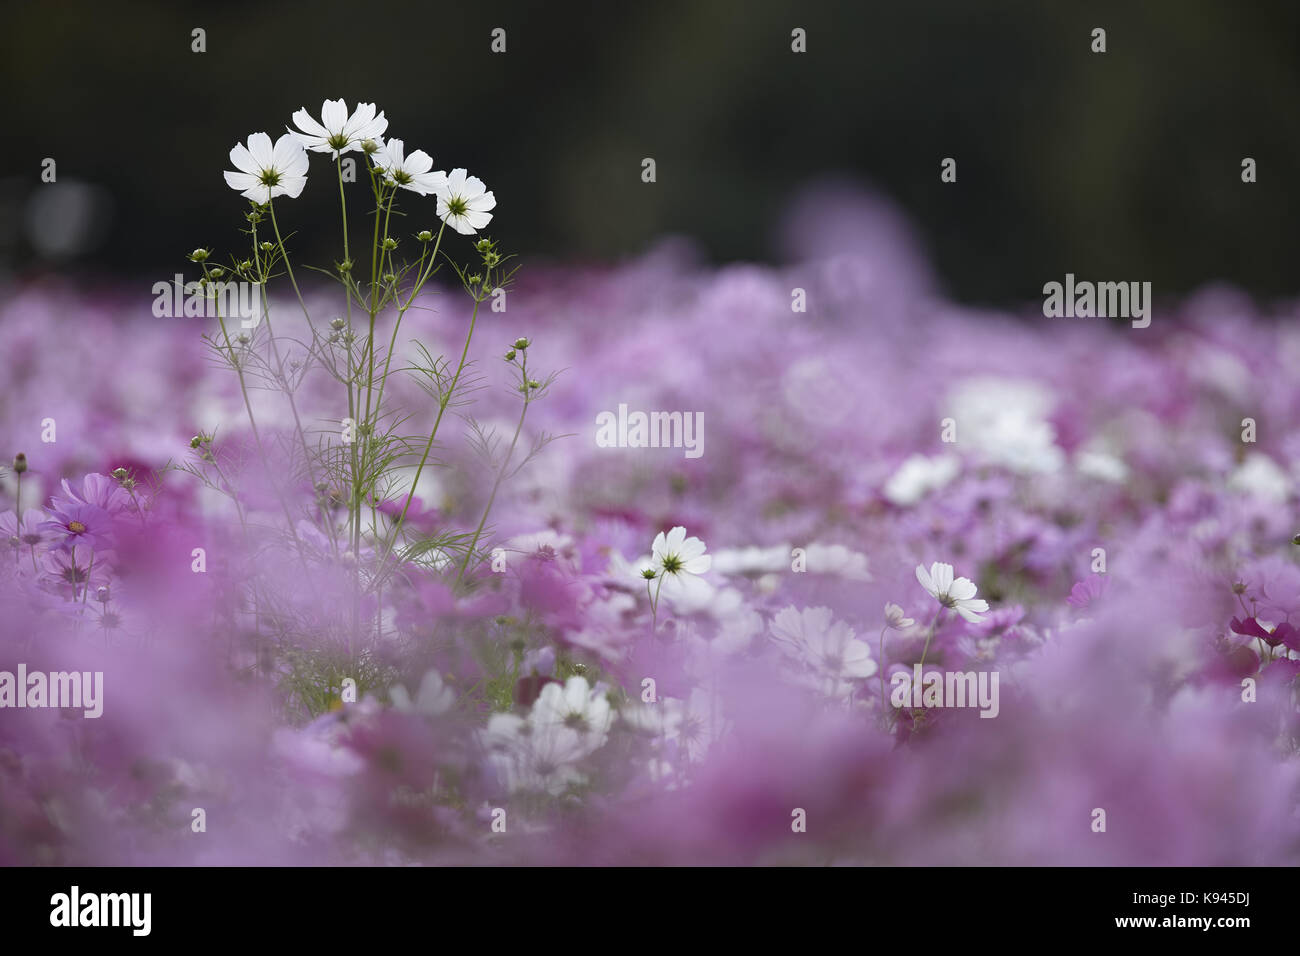 Vista superficiale del campo bianco e rosa fiori cosmos, uno alto fiore bianco spike sopra il resto. Foto Stock